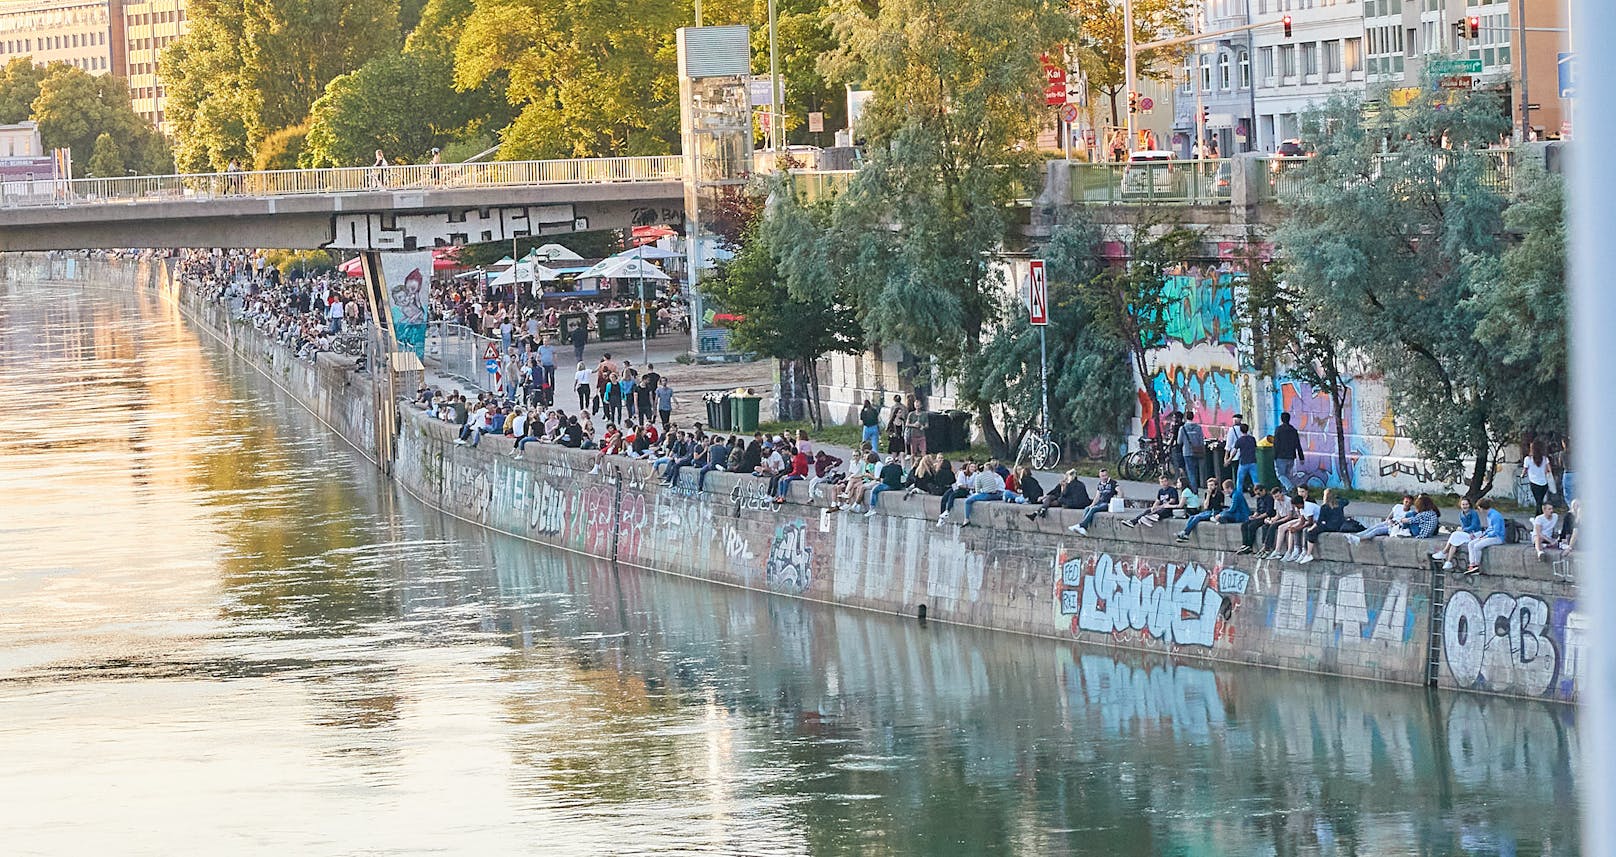 Der Donaukanal ist eine beliebte Partymeile. Das bringt aber auch Lärm, Müll und Kriminalität mit sich.